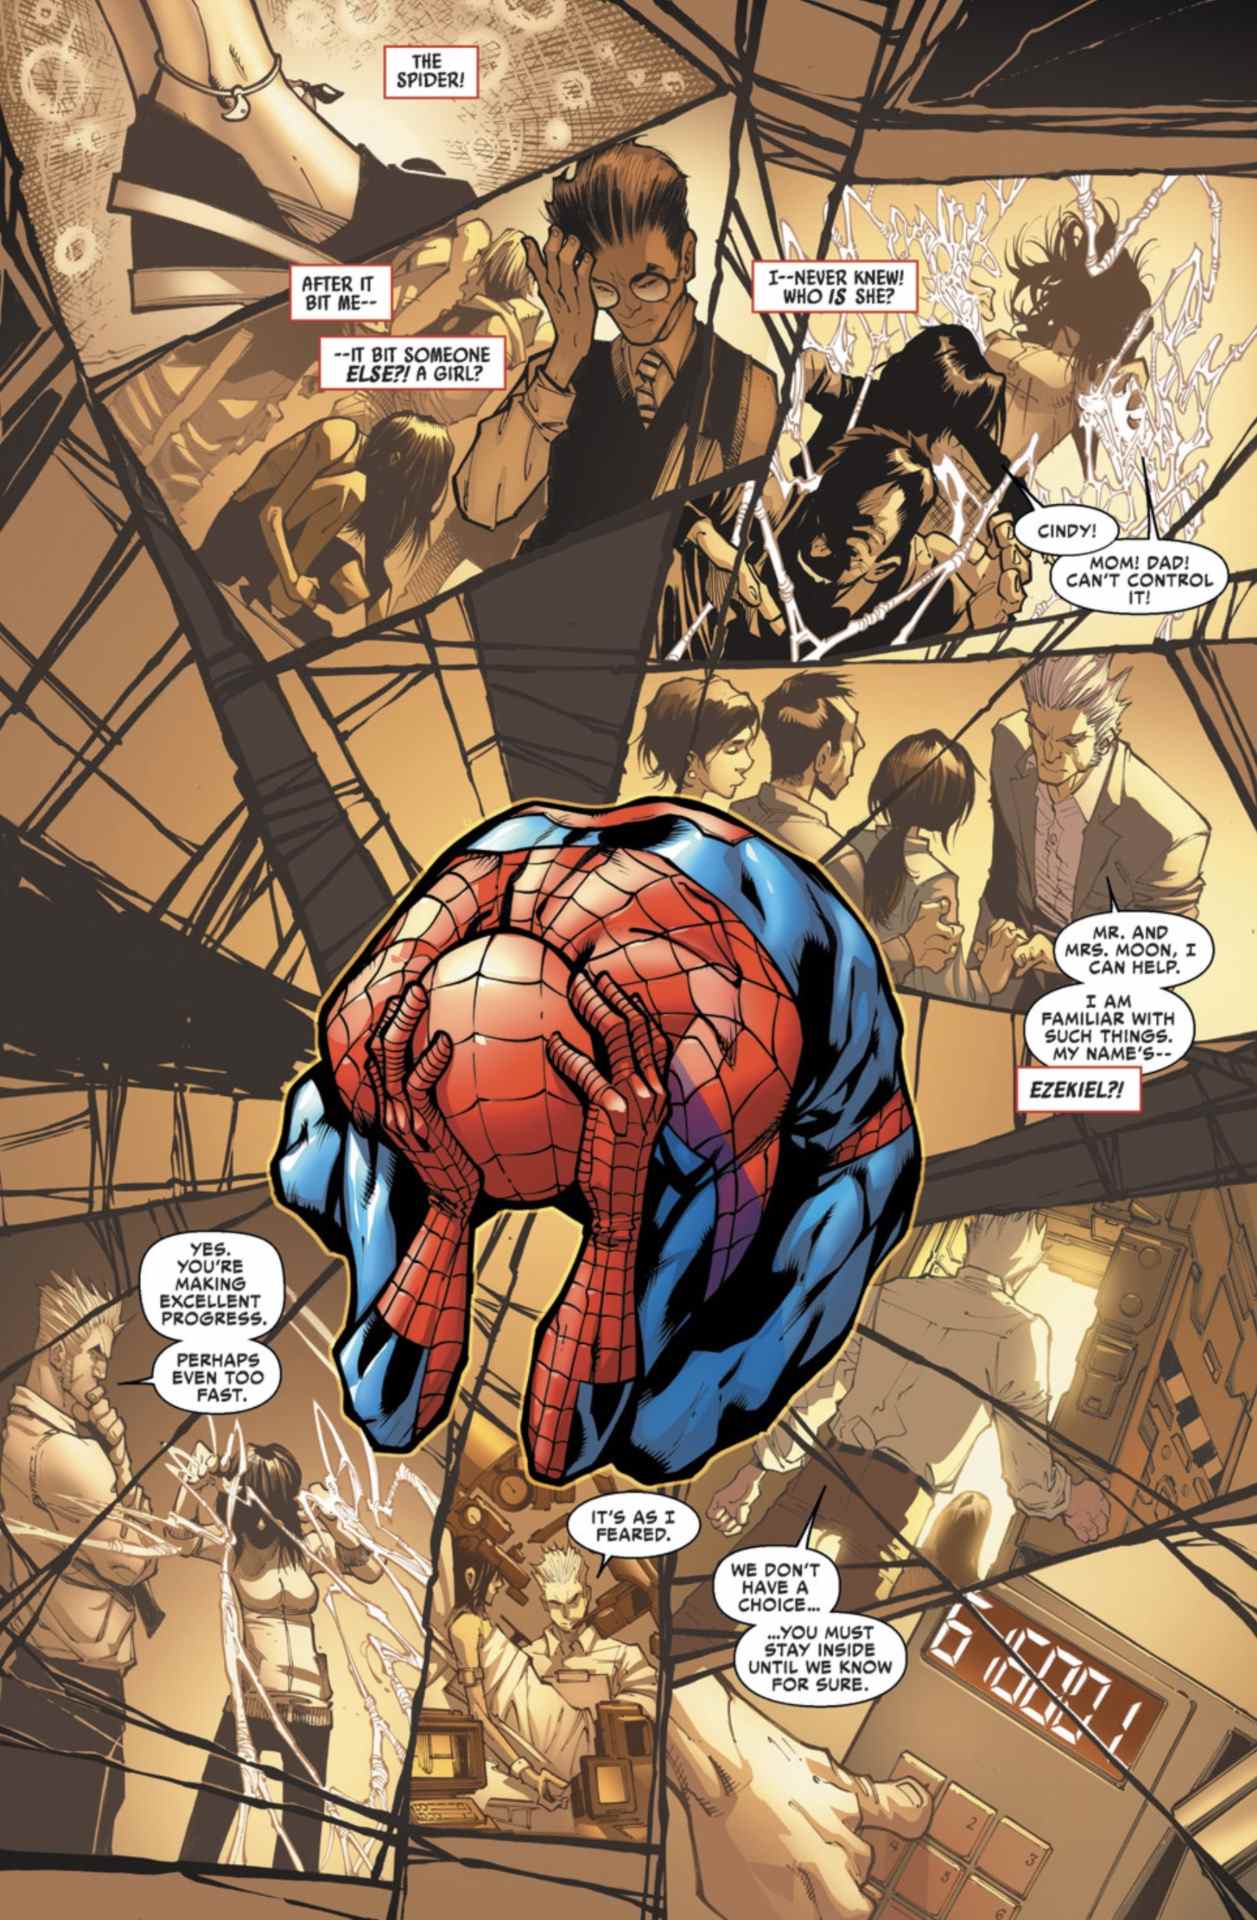 Incroyable page de Spider-Man #4